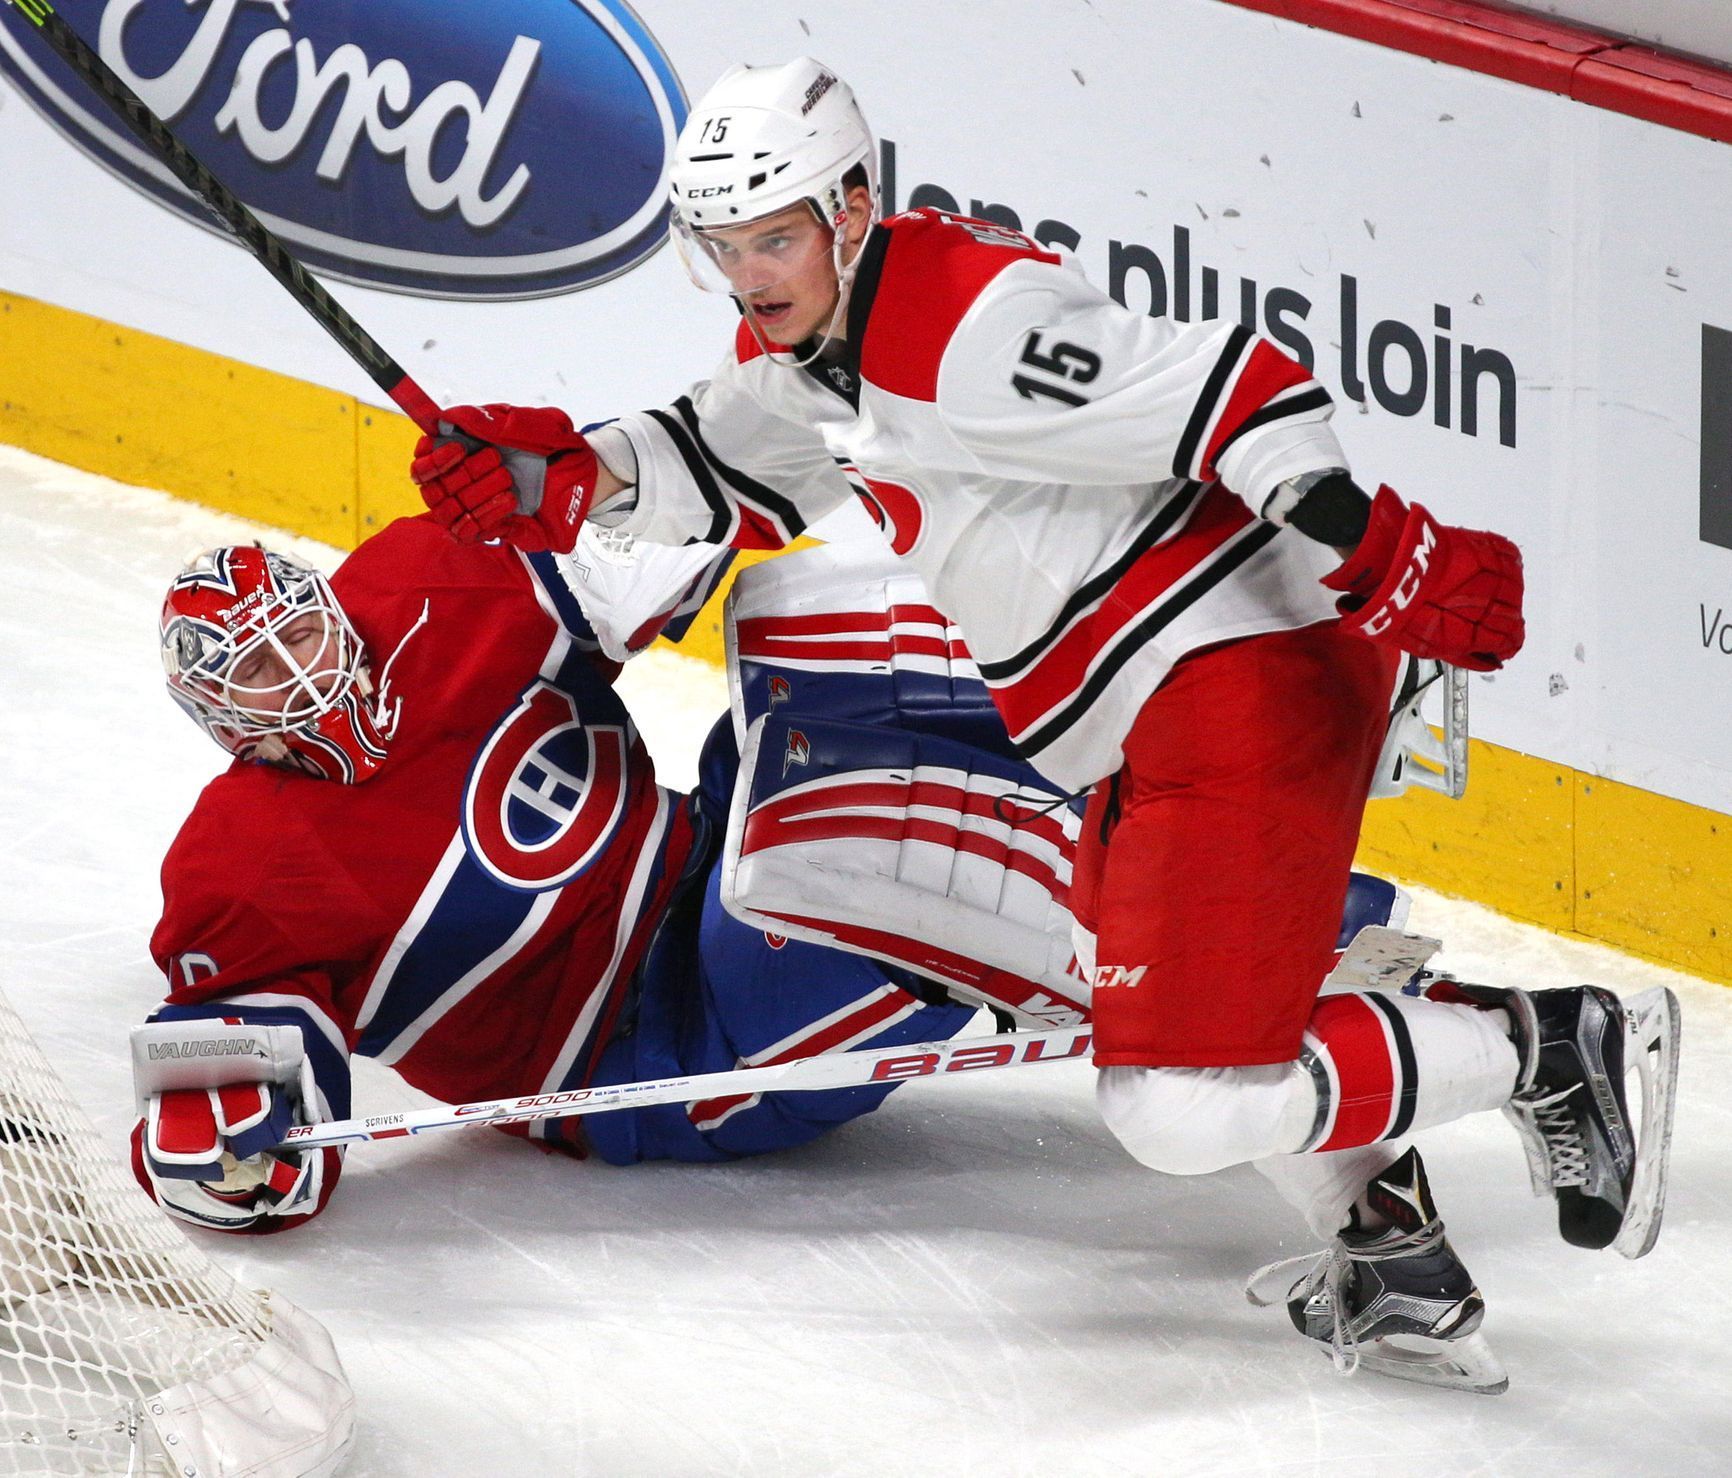 NHL: Carolina Hurricanes vs. Montreal Canadiens (Ben Scrivens, Andrej Nestrašil)